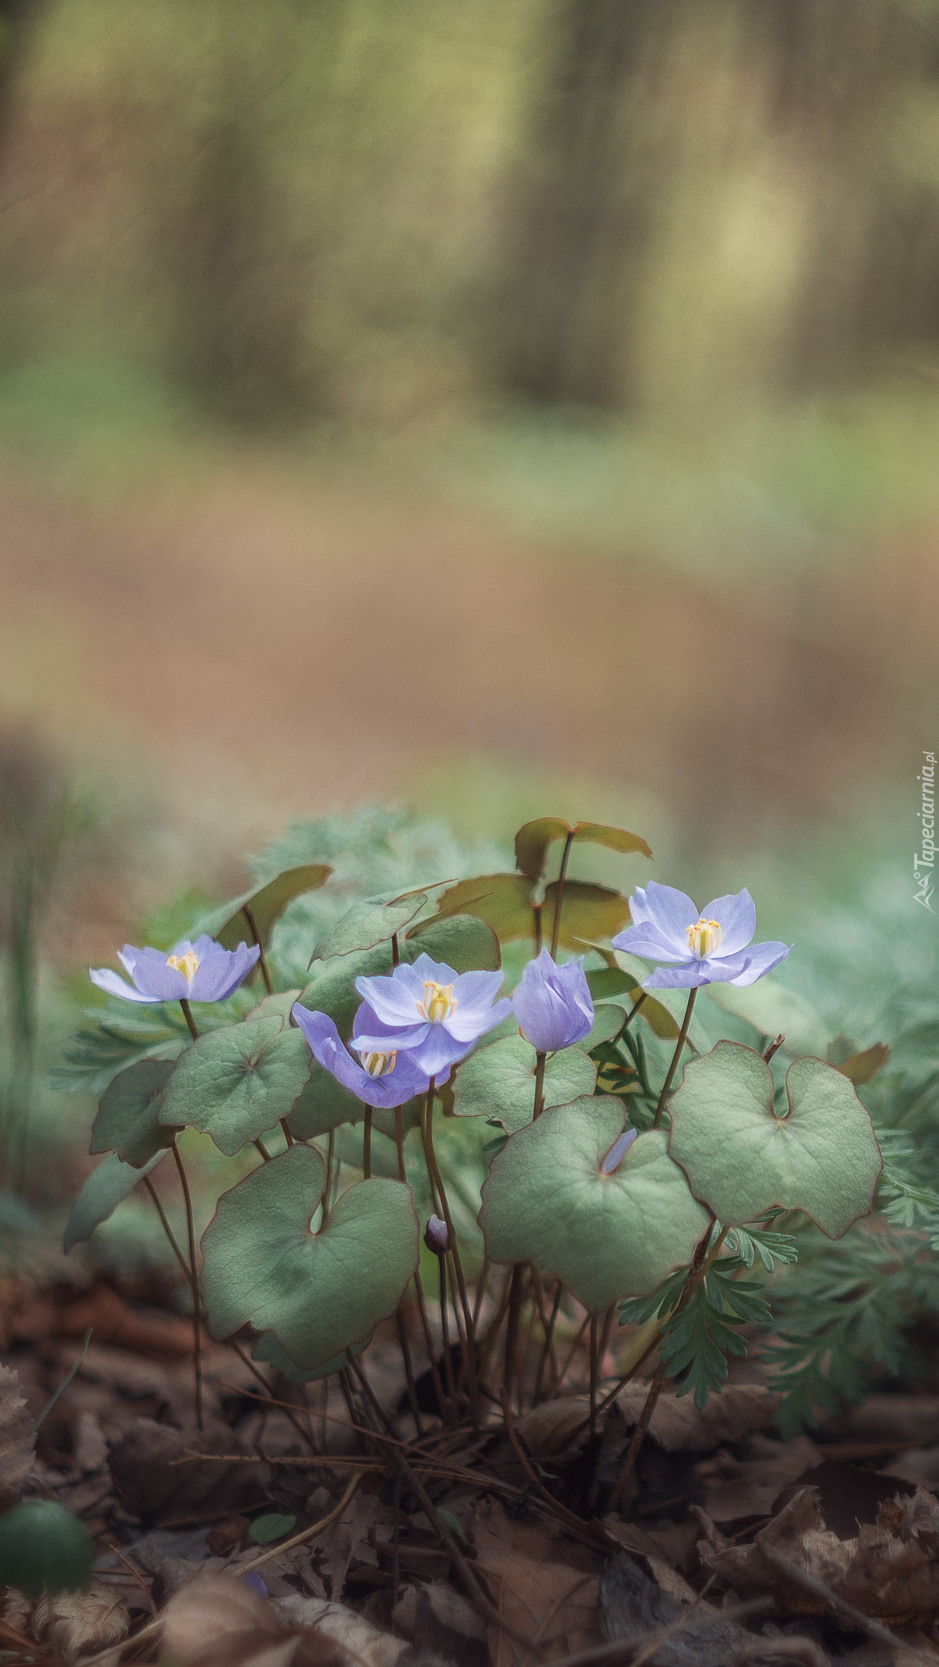 Kępka drobnych niebieskich kwiatków